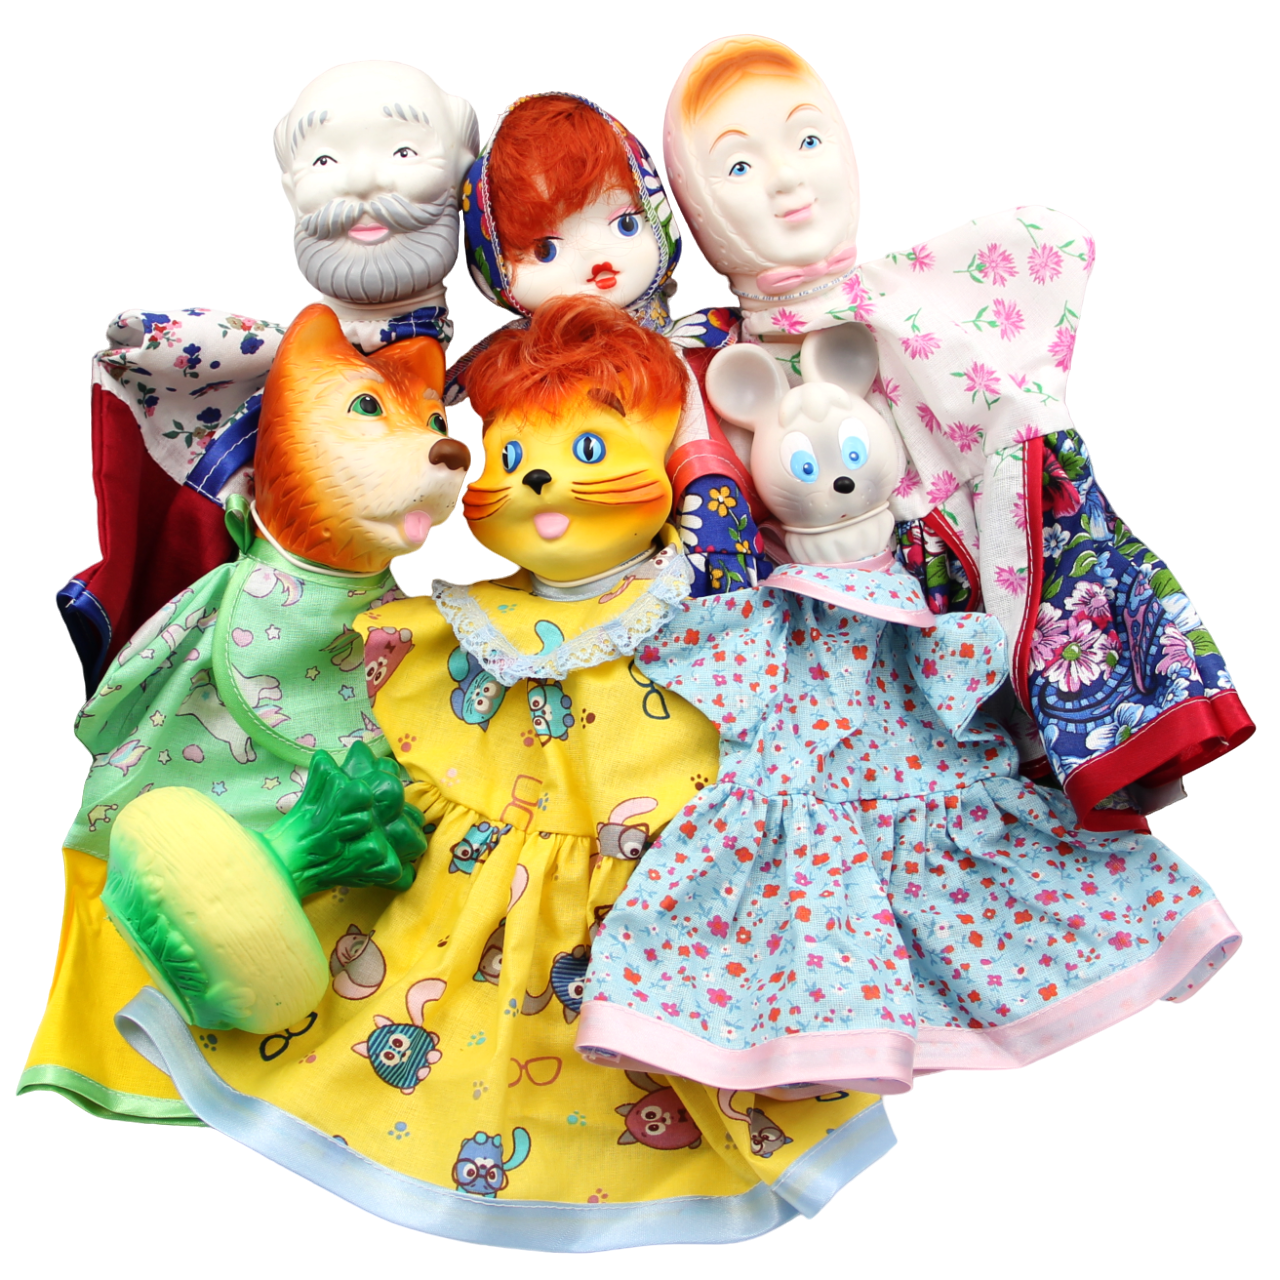 Кукла-перчатка Кудесники Домашний кукольный театр для детей Репка СИ-698-01 десятое королевство театр кукольный домашний репка 7 кукол перчаток